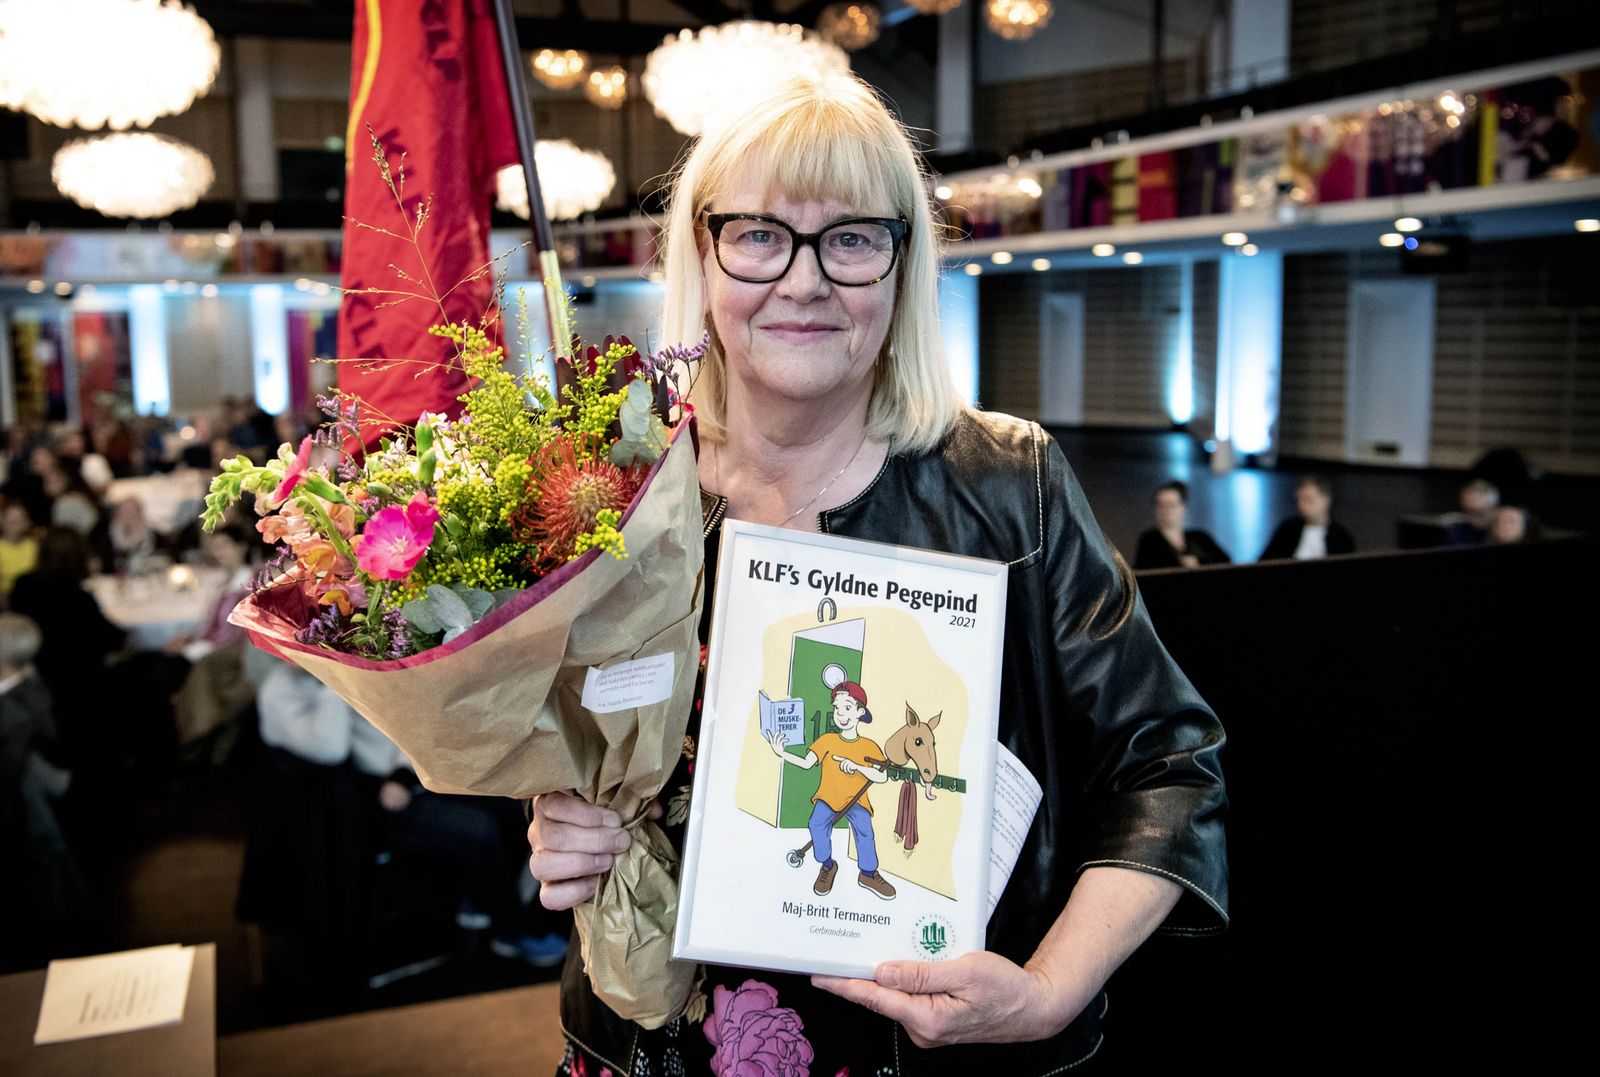 Lærer Maj-Britt Termansen er årets modtager af Den Gyldne Pegepind. Foto: Nils Meilvang